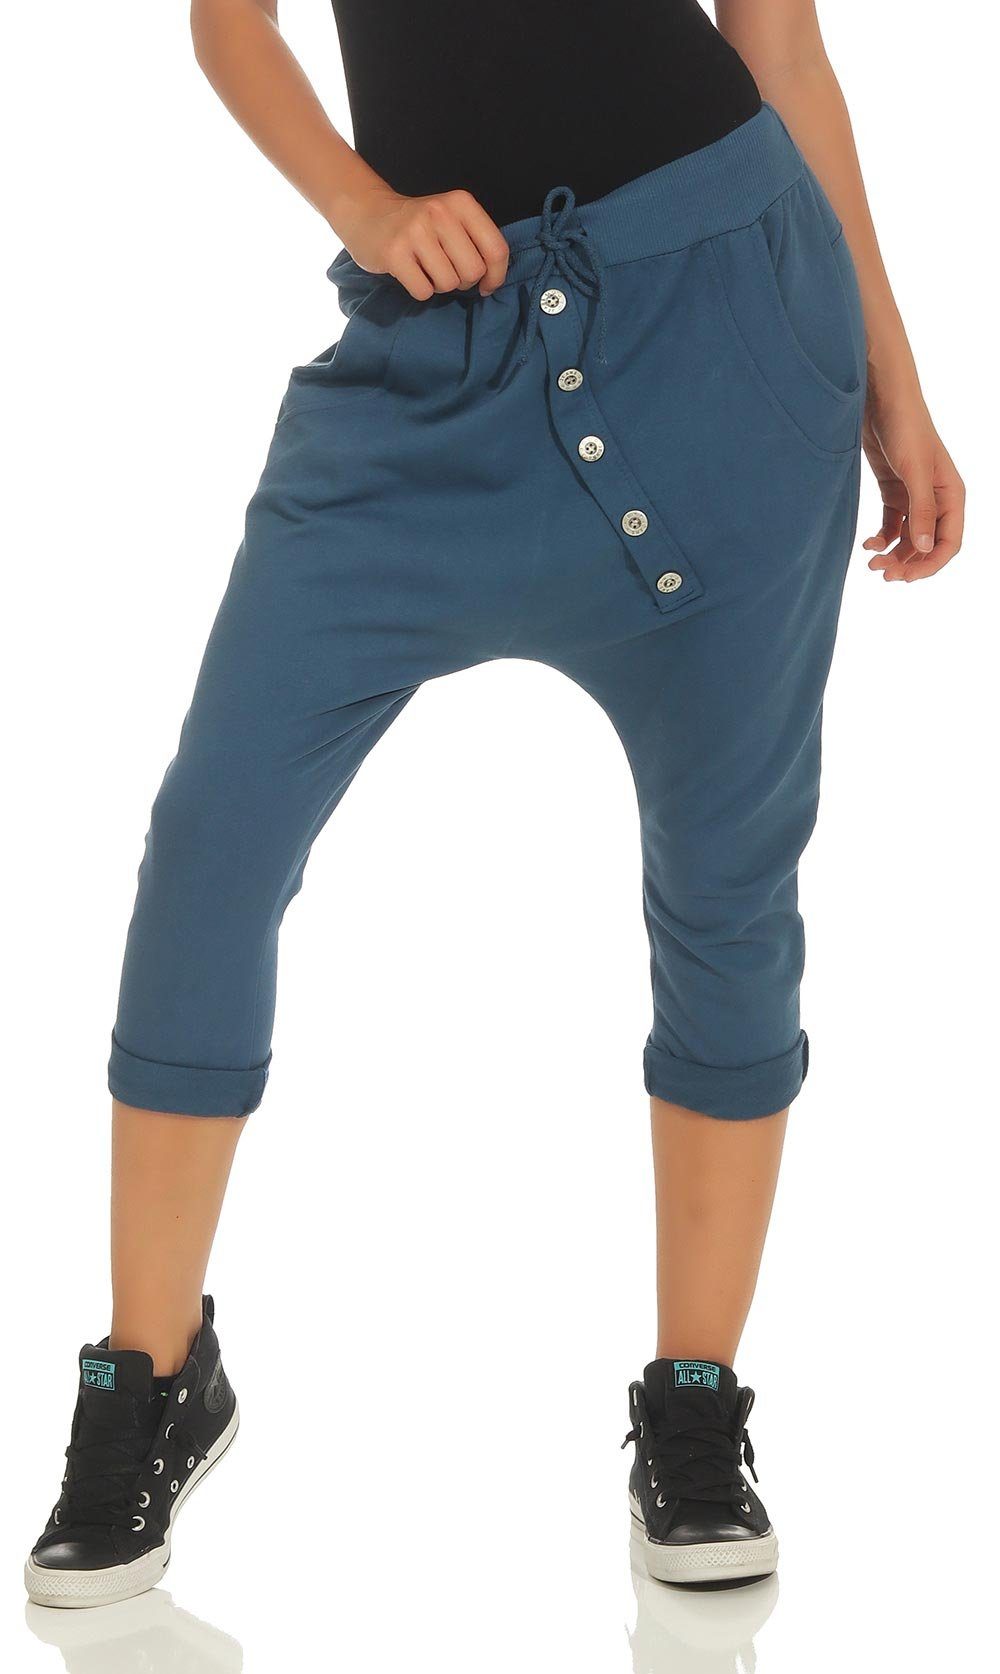 malito more than fashion Caprihose 8015 Sommer Sport Hose mit elastischem Jerseybund Einheitsgröße jeansblau